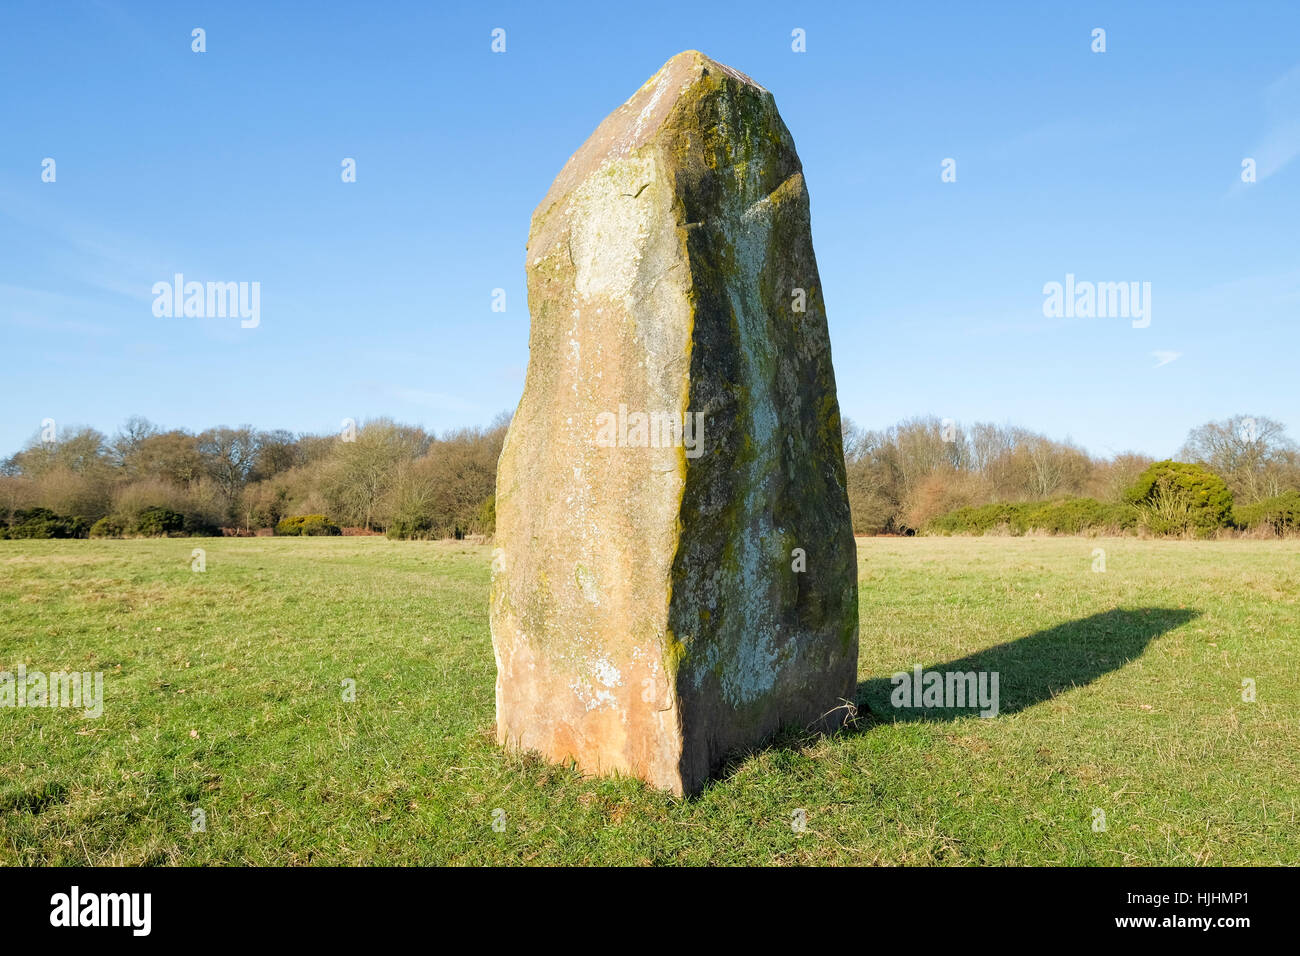 Les objectifs du Millénaire pour pierre, West Wycombe, Buckinghamshire Ibstone, commune, England, UK Banque D'Images